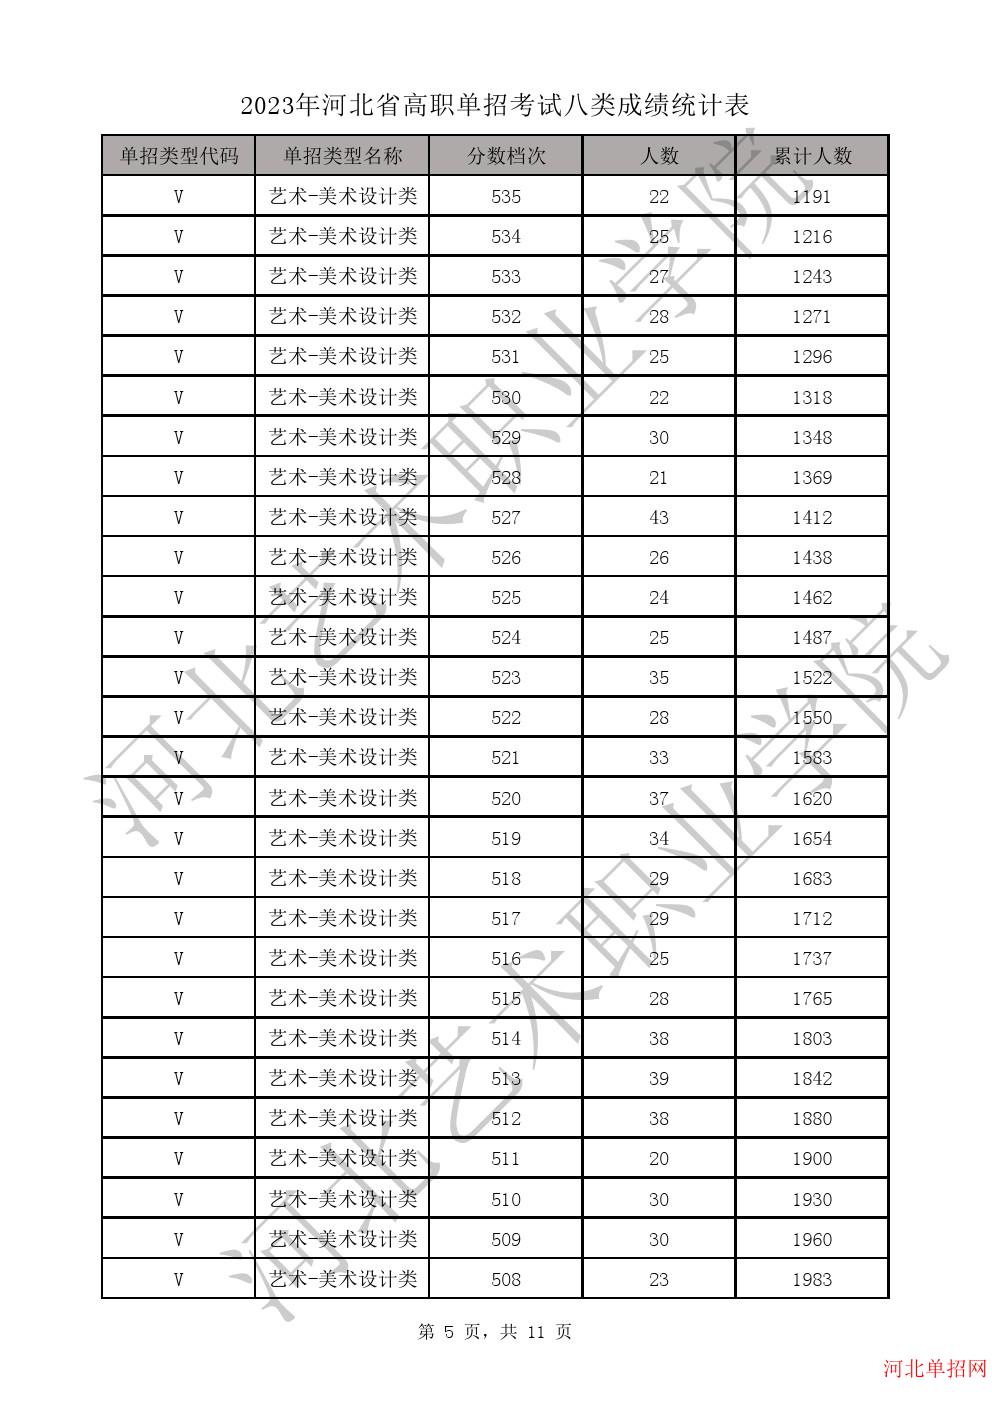 2023年河北省高职单招考试八类成绩统计表-V艺术-美术设计类一分一档表 图5